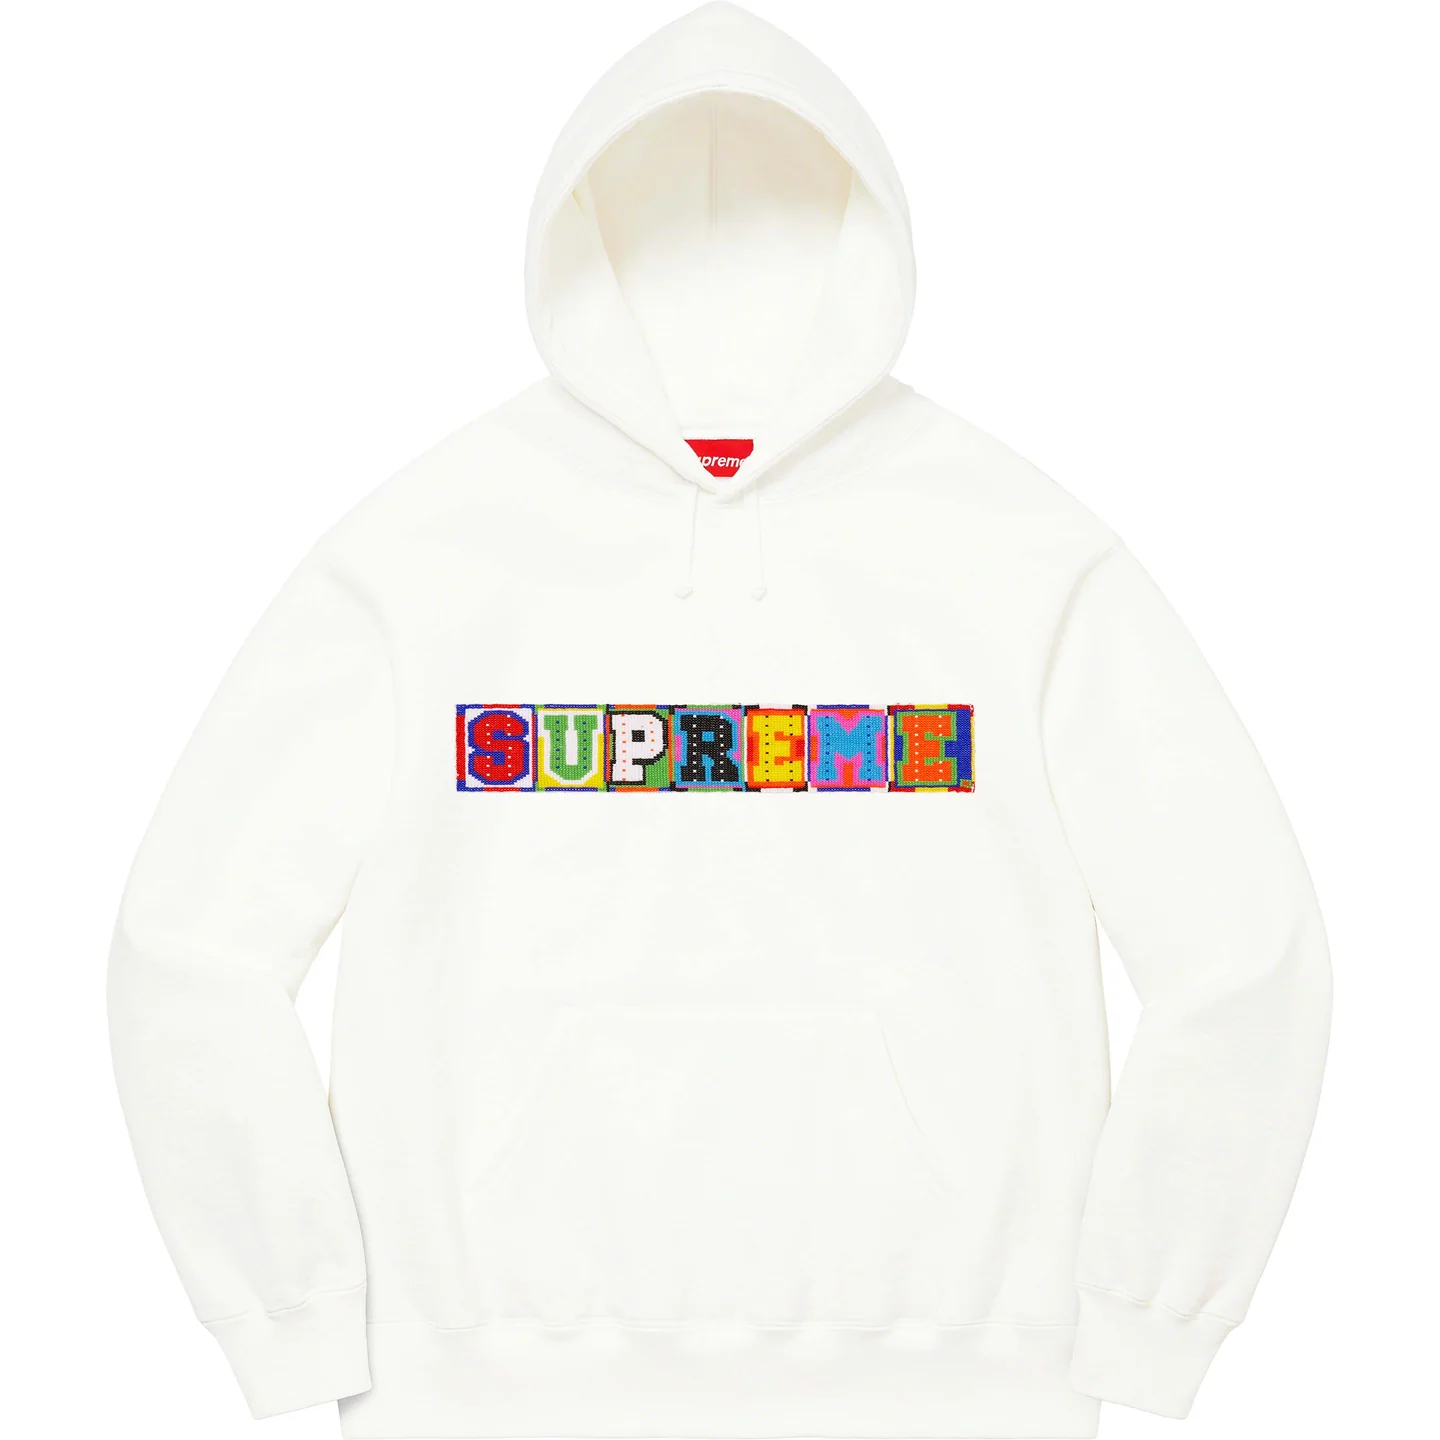 Supreme Beaded Hooded Sweatshirt